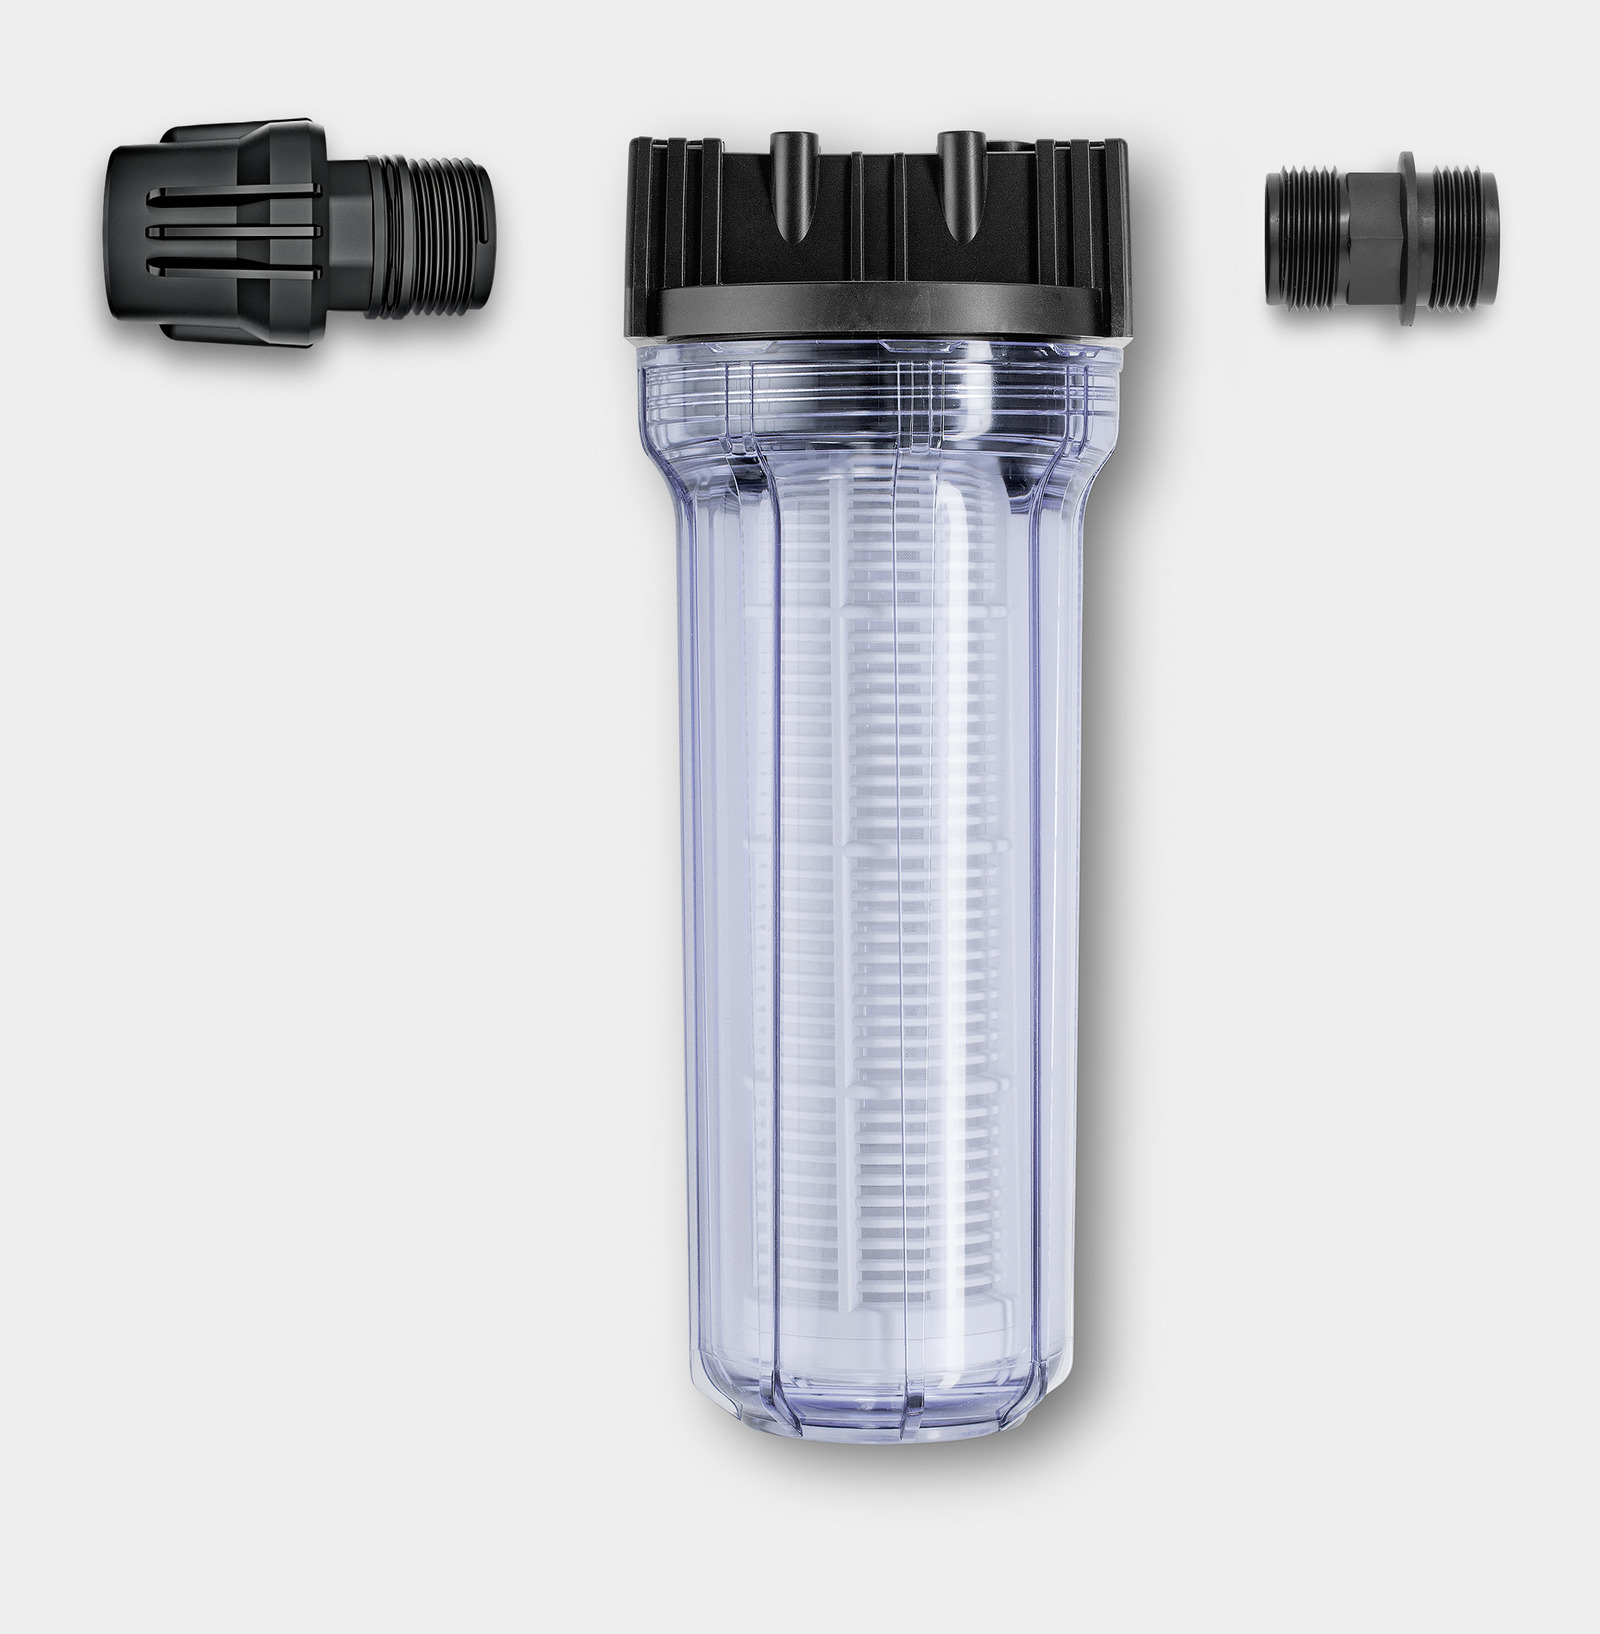 Фильтр для воды высокого давления. Karcher фильтр для воды (2.642-794.0). Входной фильтр воды, 1/2"-1/2" Tecomec. Фильтр входной Karcher. Фильтр водяной входной для АВД, 1/2"-1/2" 150 Mic (m-mof0006).